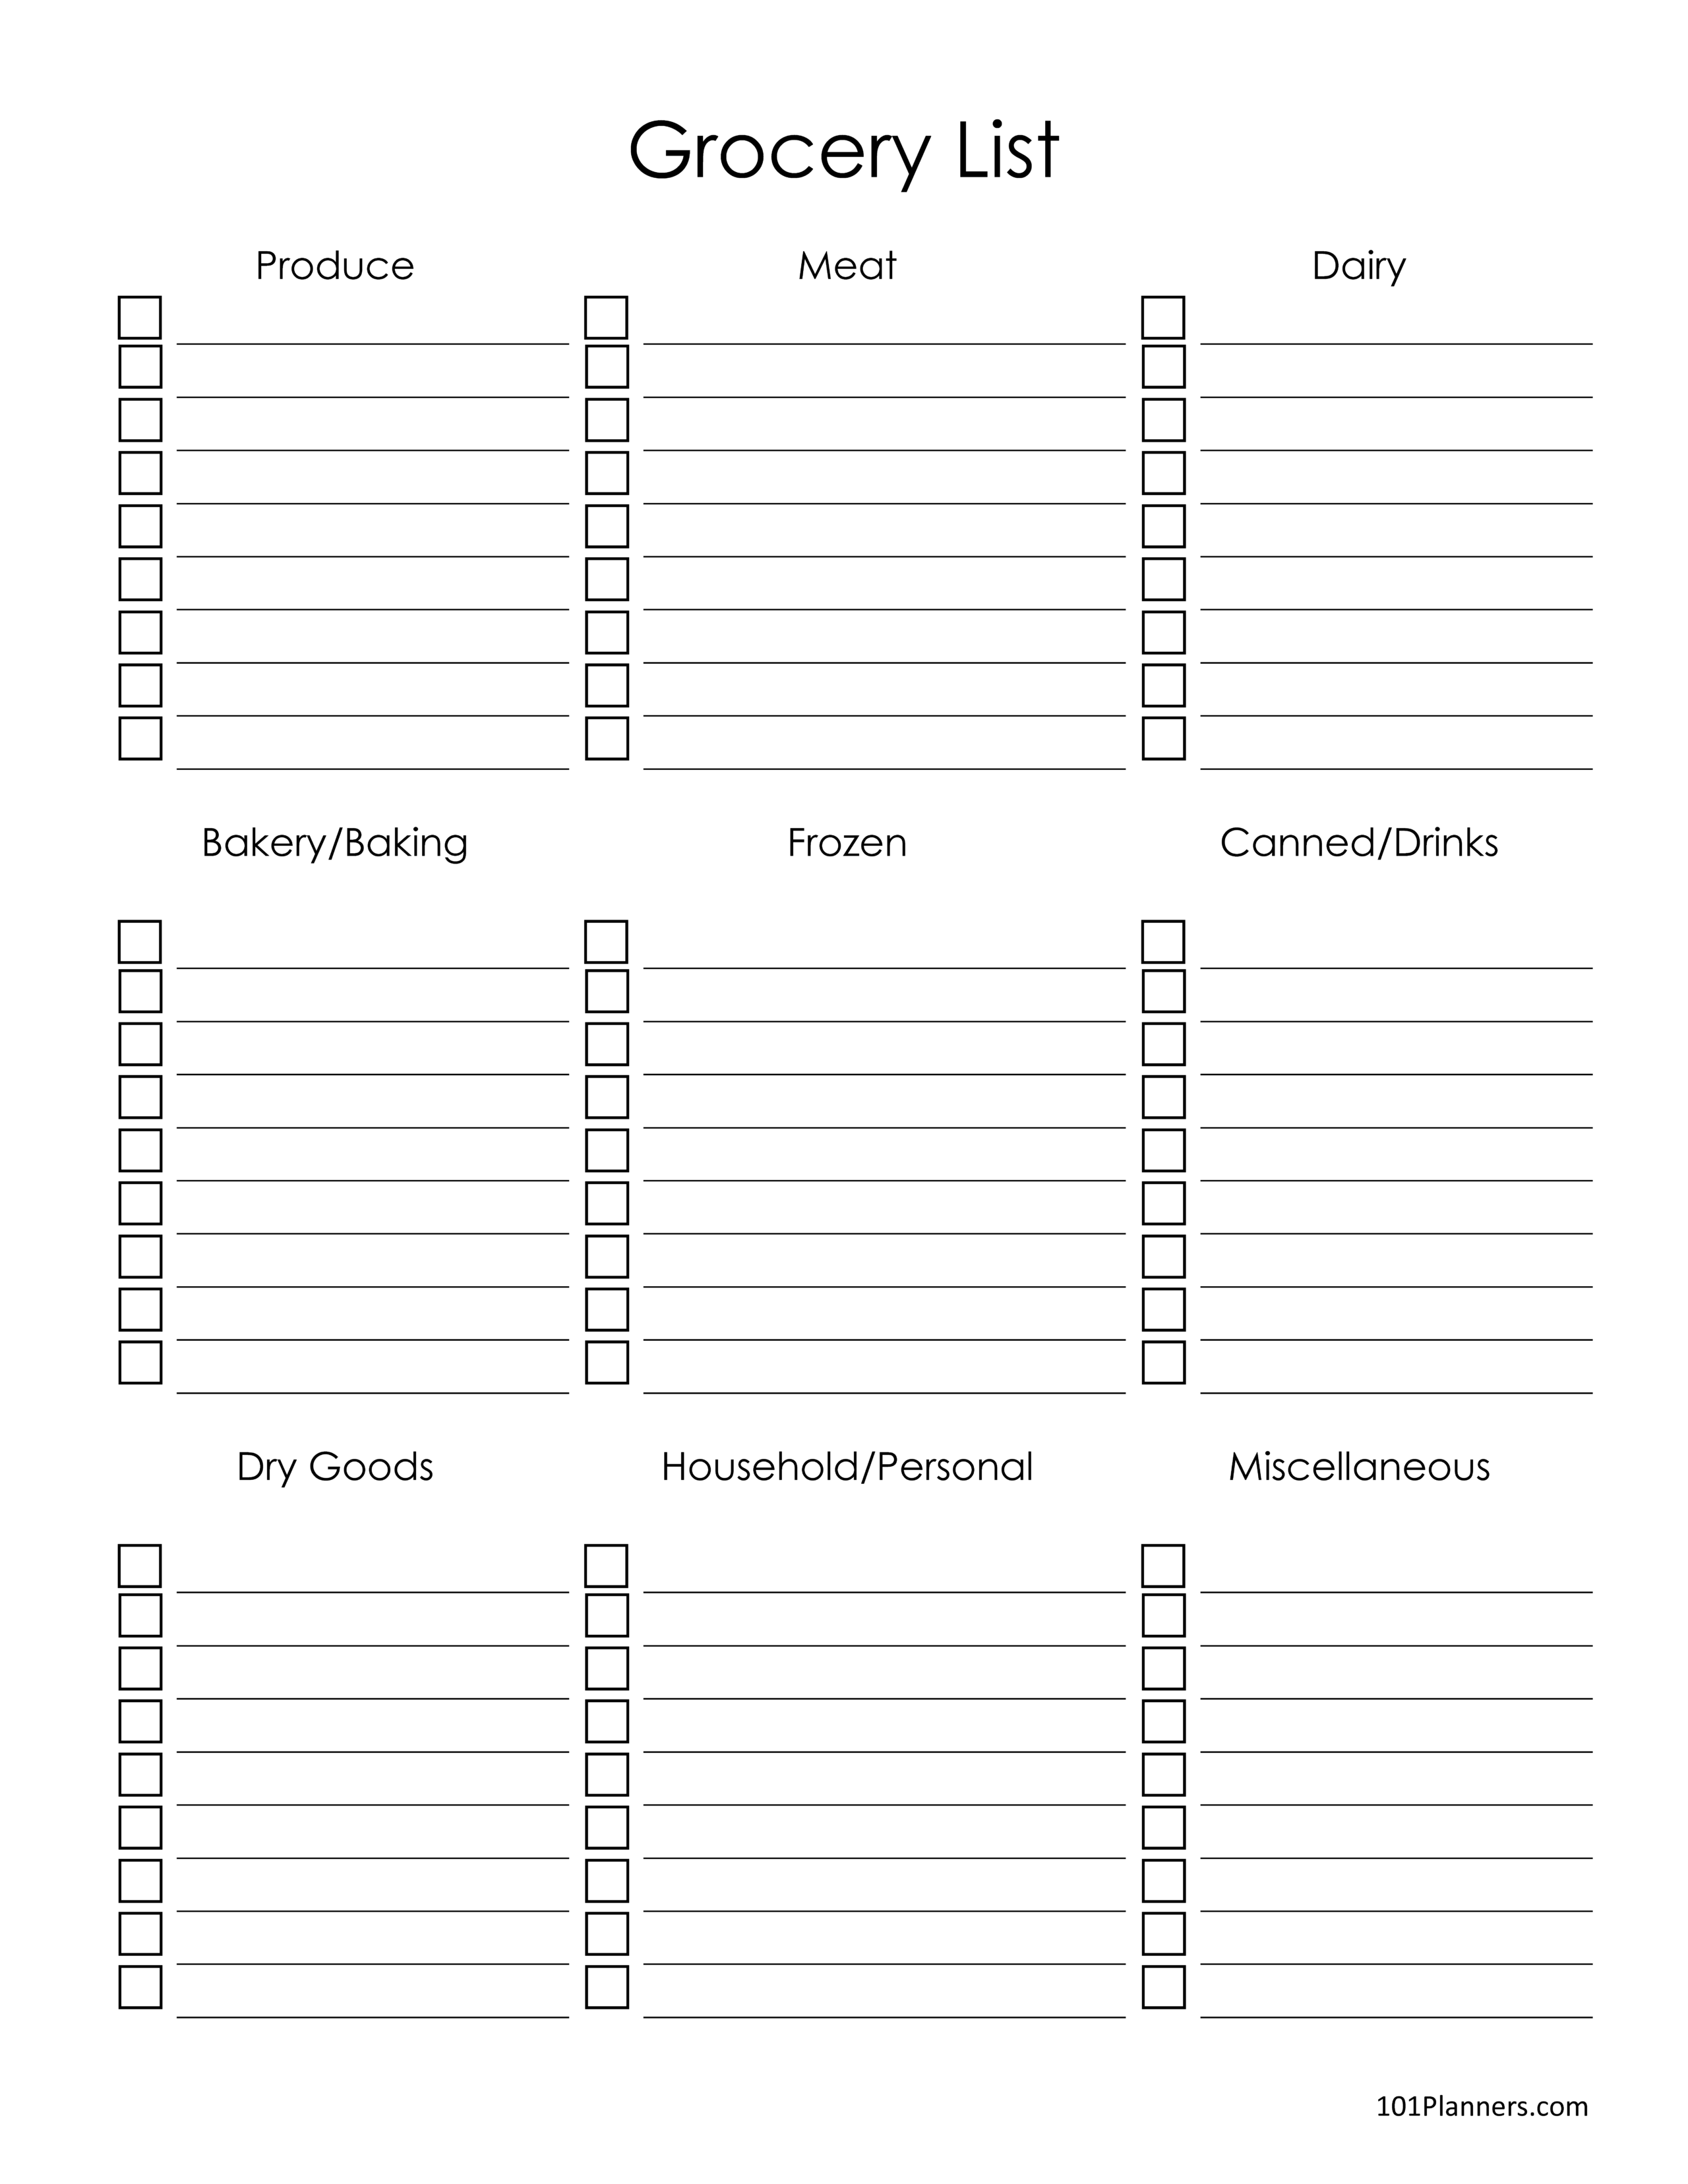 blank-printable-grocery-list-template-printable-templates